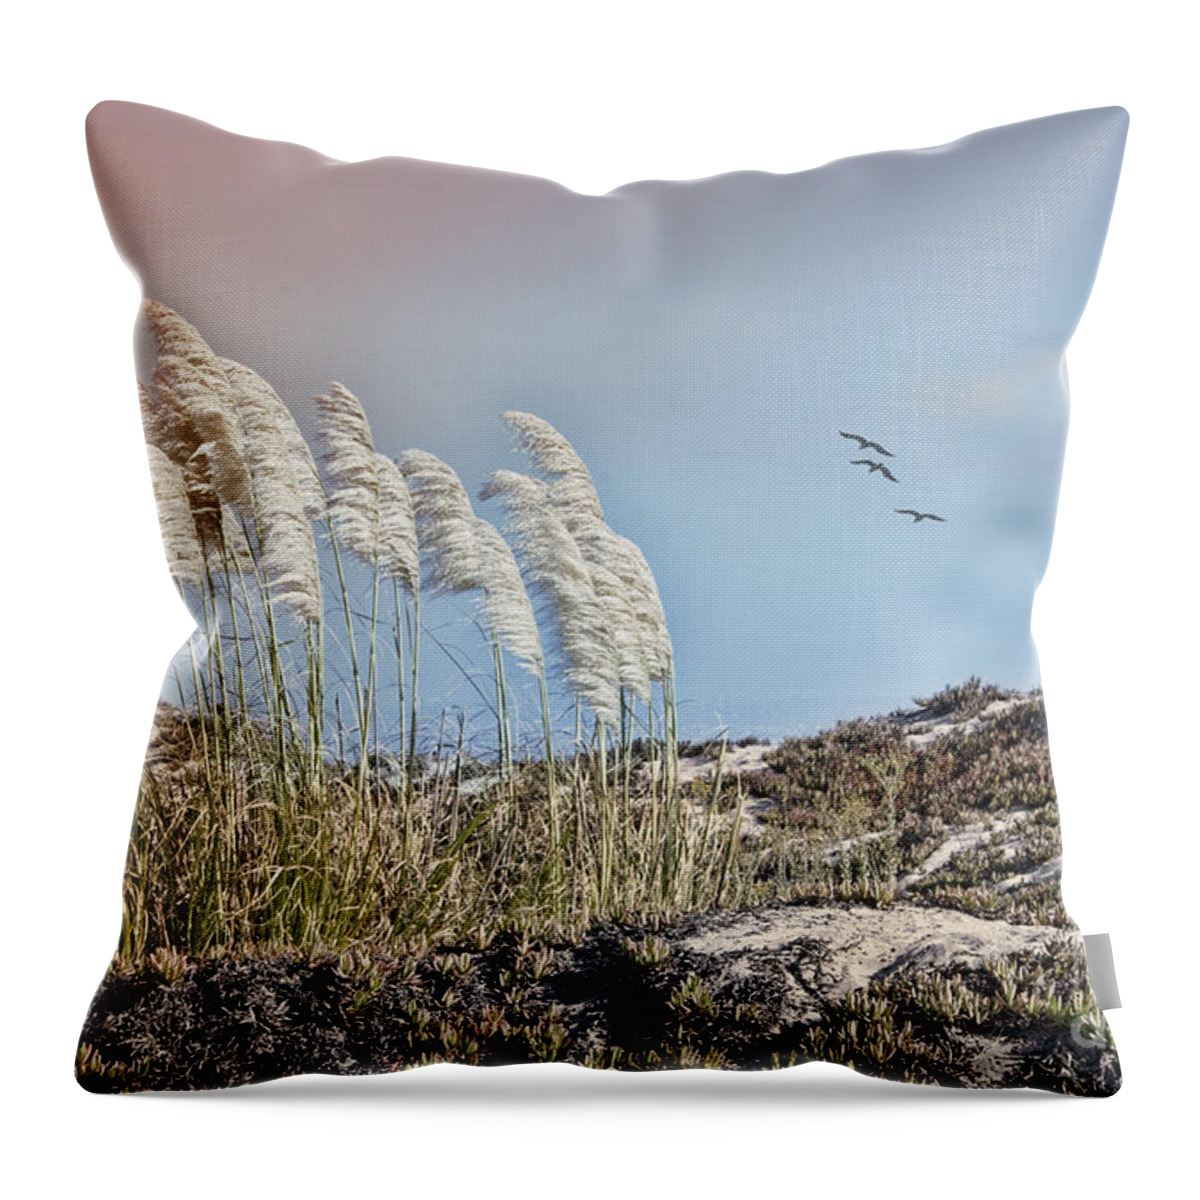 Pampas Grass Throw Pillow featuring the photograph Coronado Island Pampas Grass by Betty LaRue